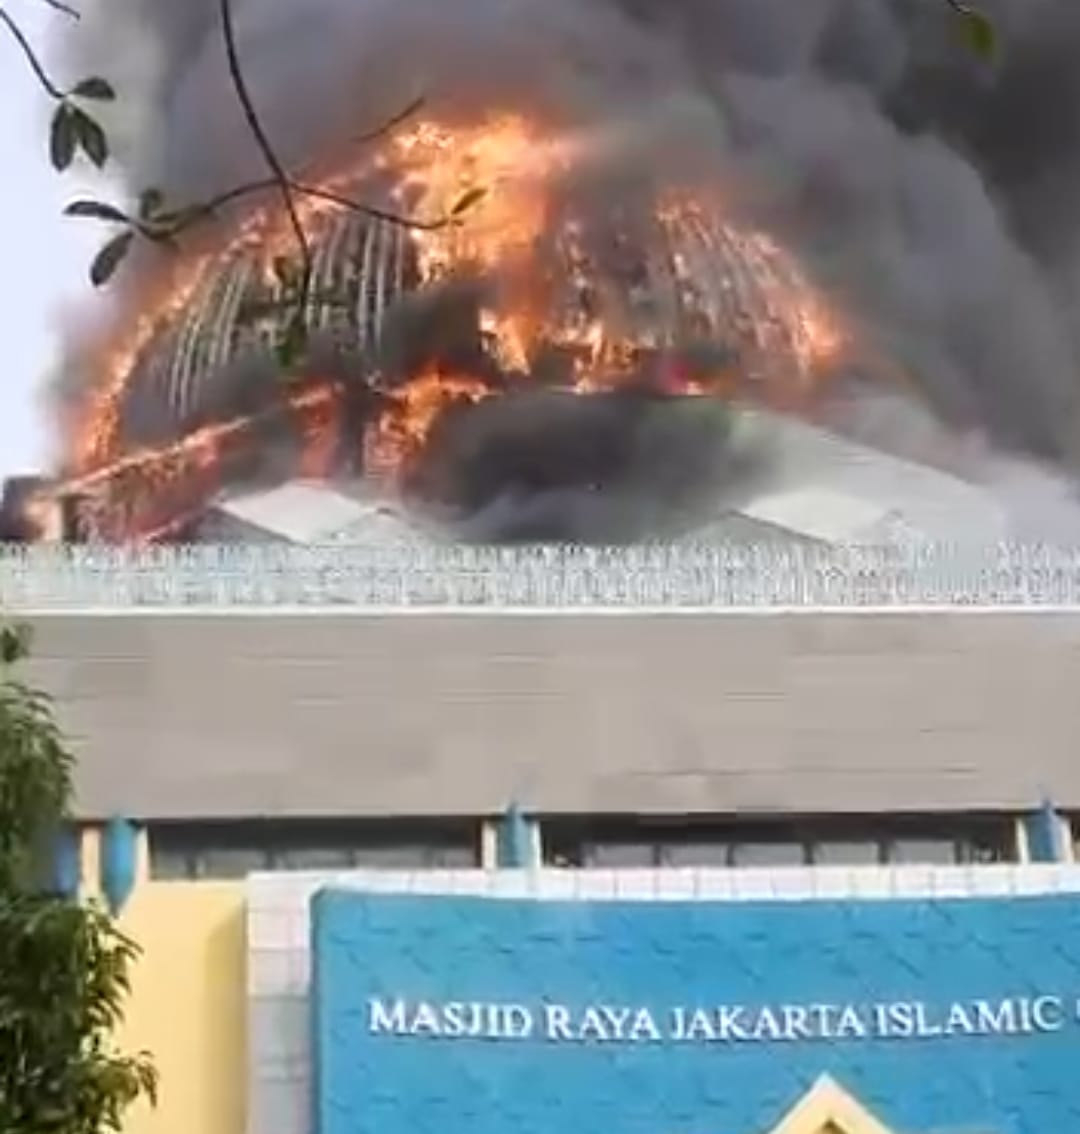 Kubah Masjid Jakarta Islamic Center Terbakar, Begini Sejarah Berdirinya Tempat Ibadah Umat Islam yang Dulunya